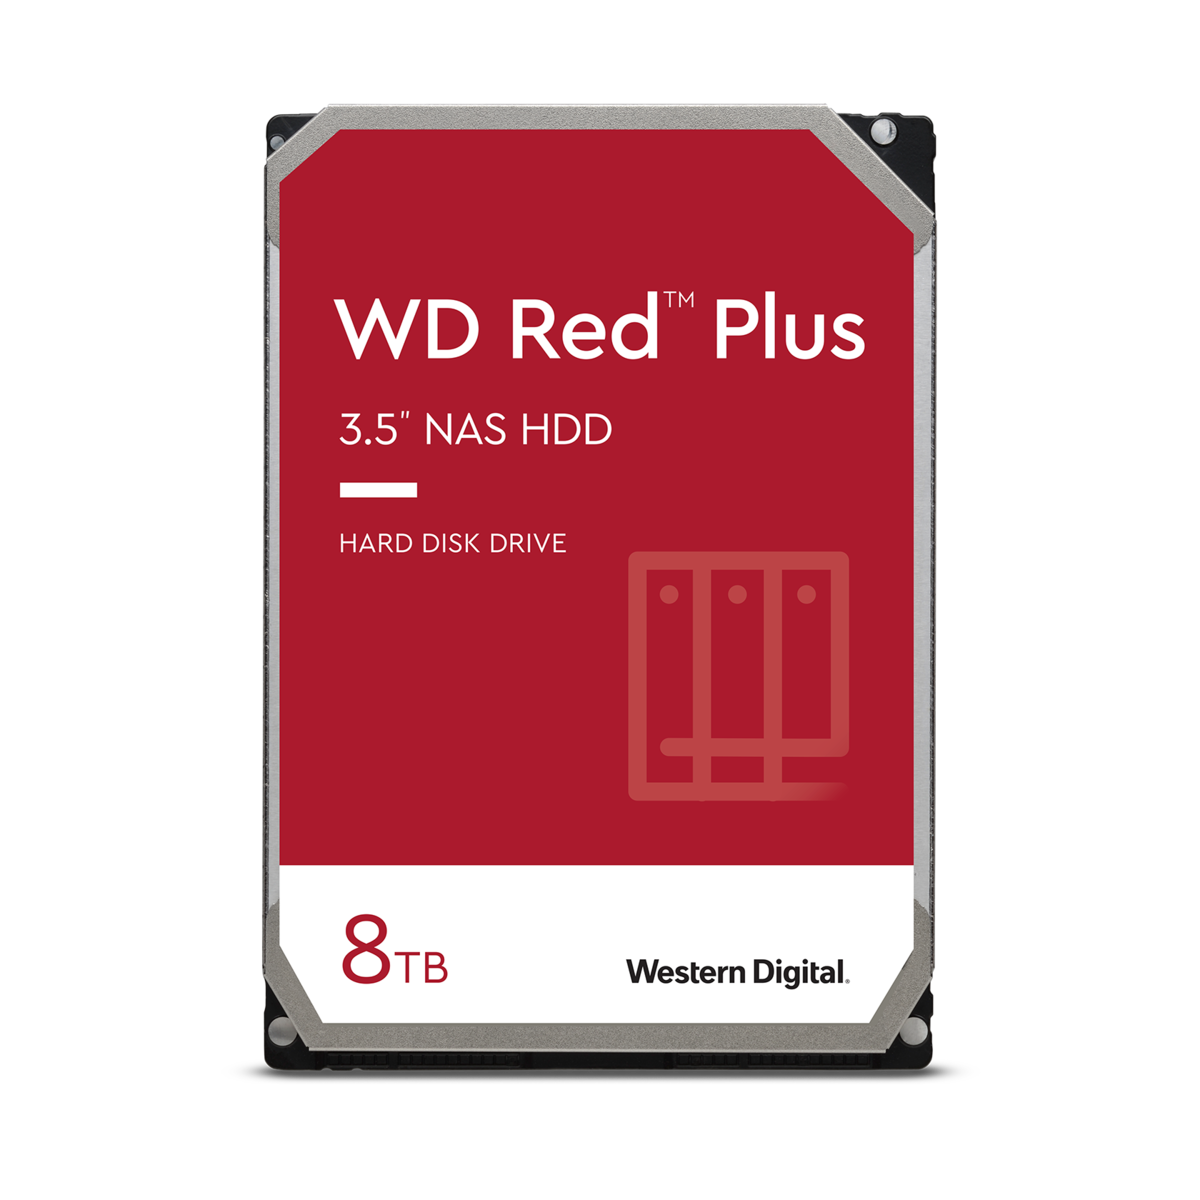 Sælger Øde hvordan man bruger WD Red Plus 8TB NAS Hard Disk Drive - 5400 RPM, 3.5" - Newegg.com